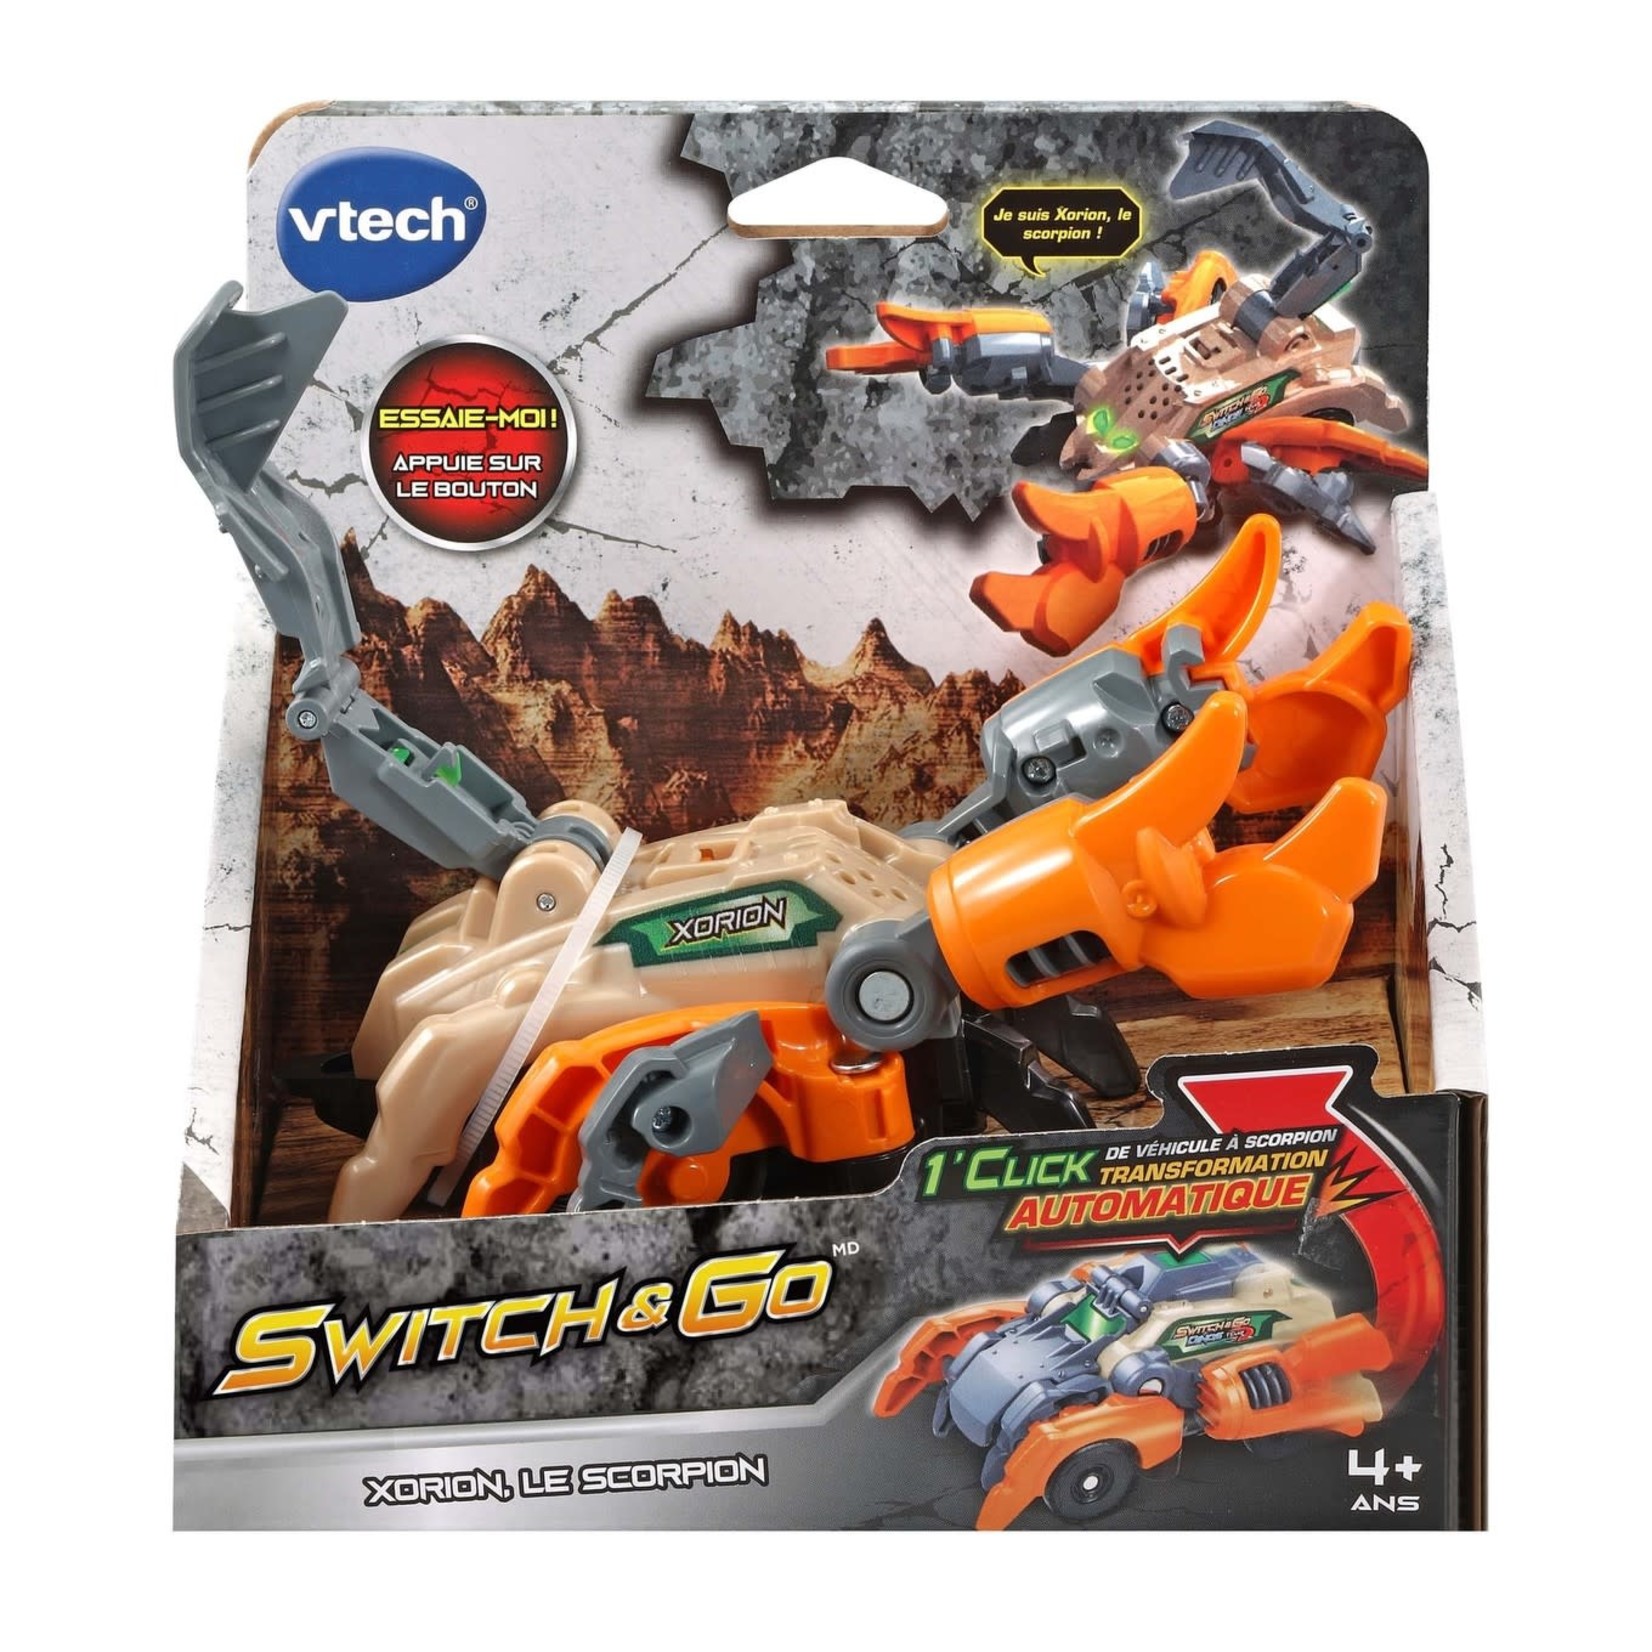 VTech VTech - Switch & Go : Xorion, le scorpion